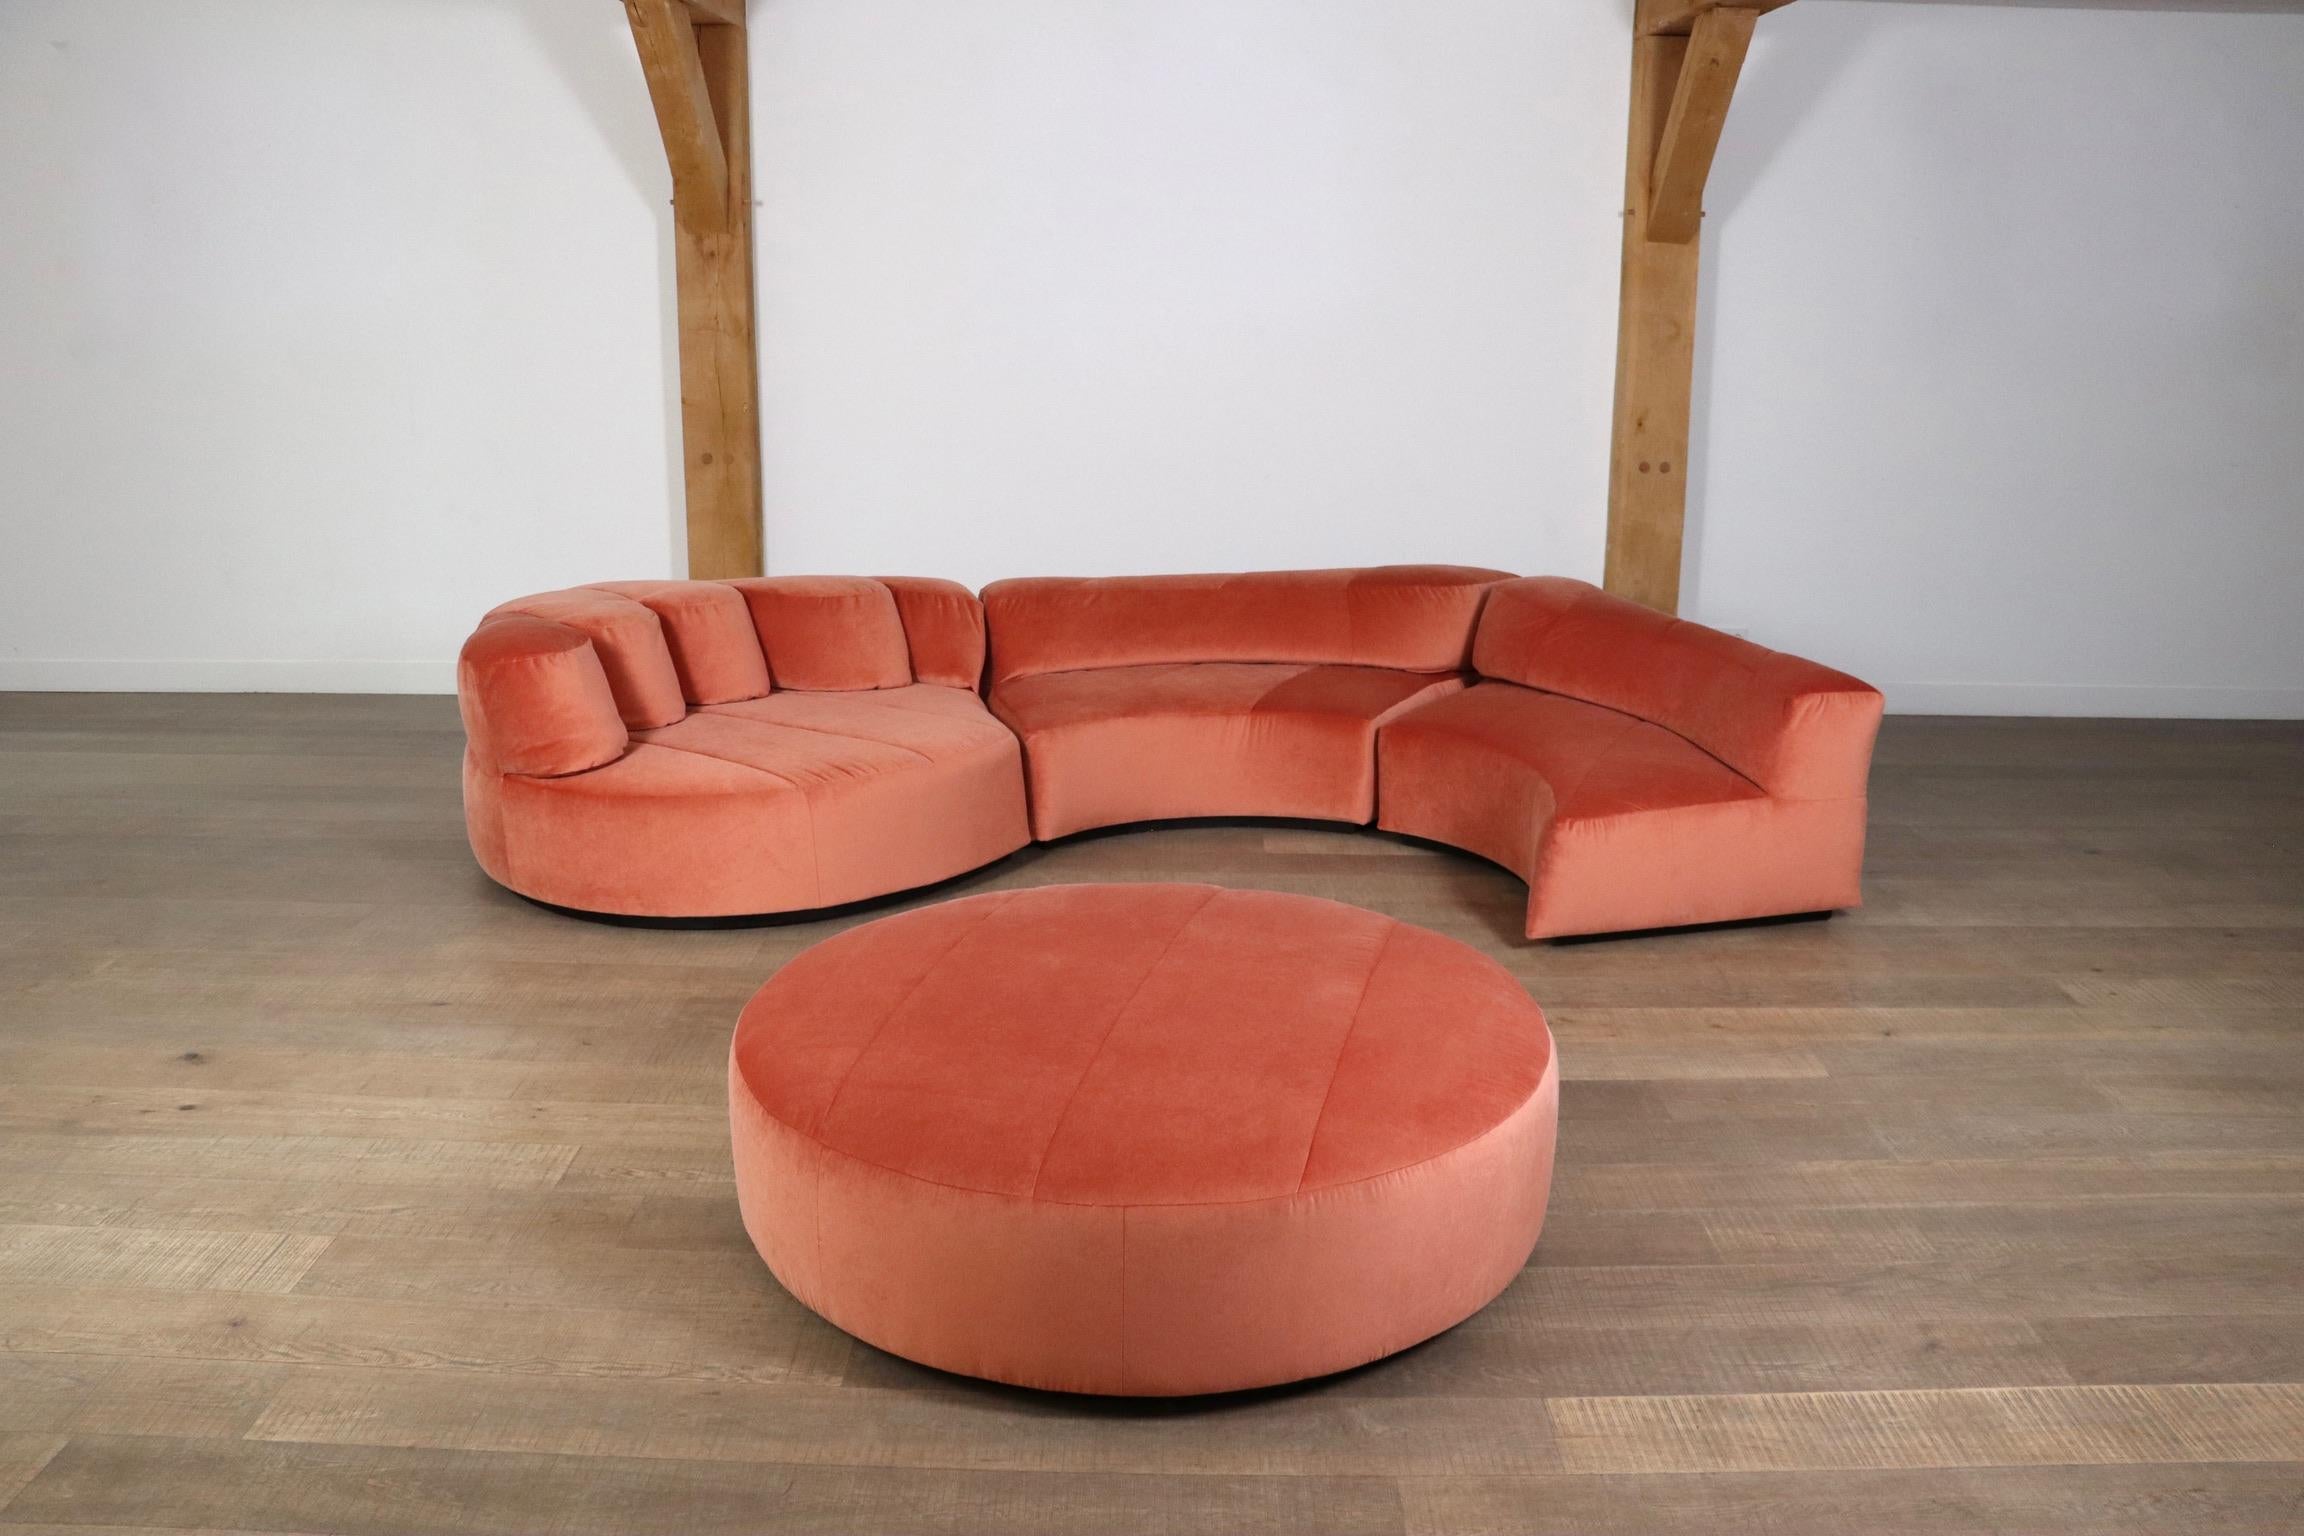 Roche Bobois “Paysage” Sofa In Coral Velvet By Hans Hopfer For Roche Bobois 1974 3